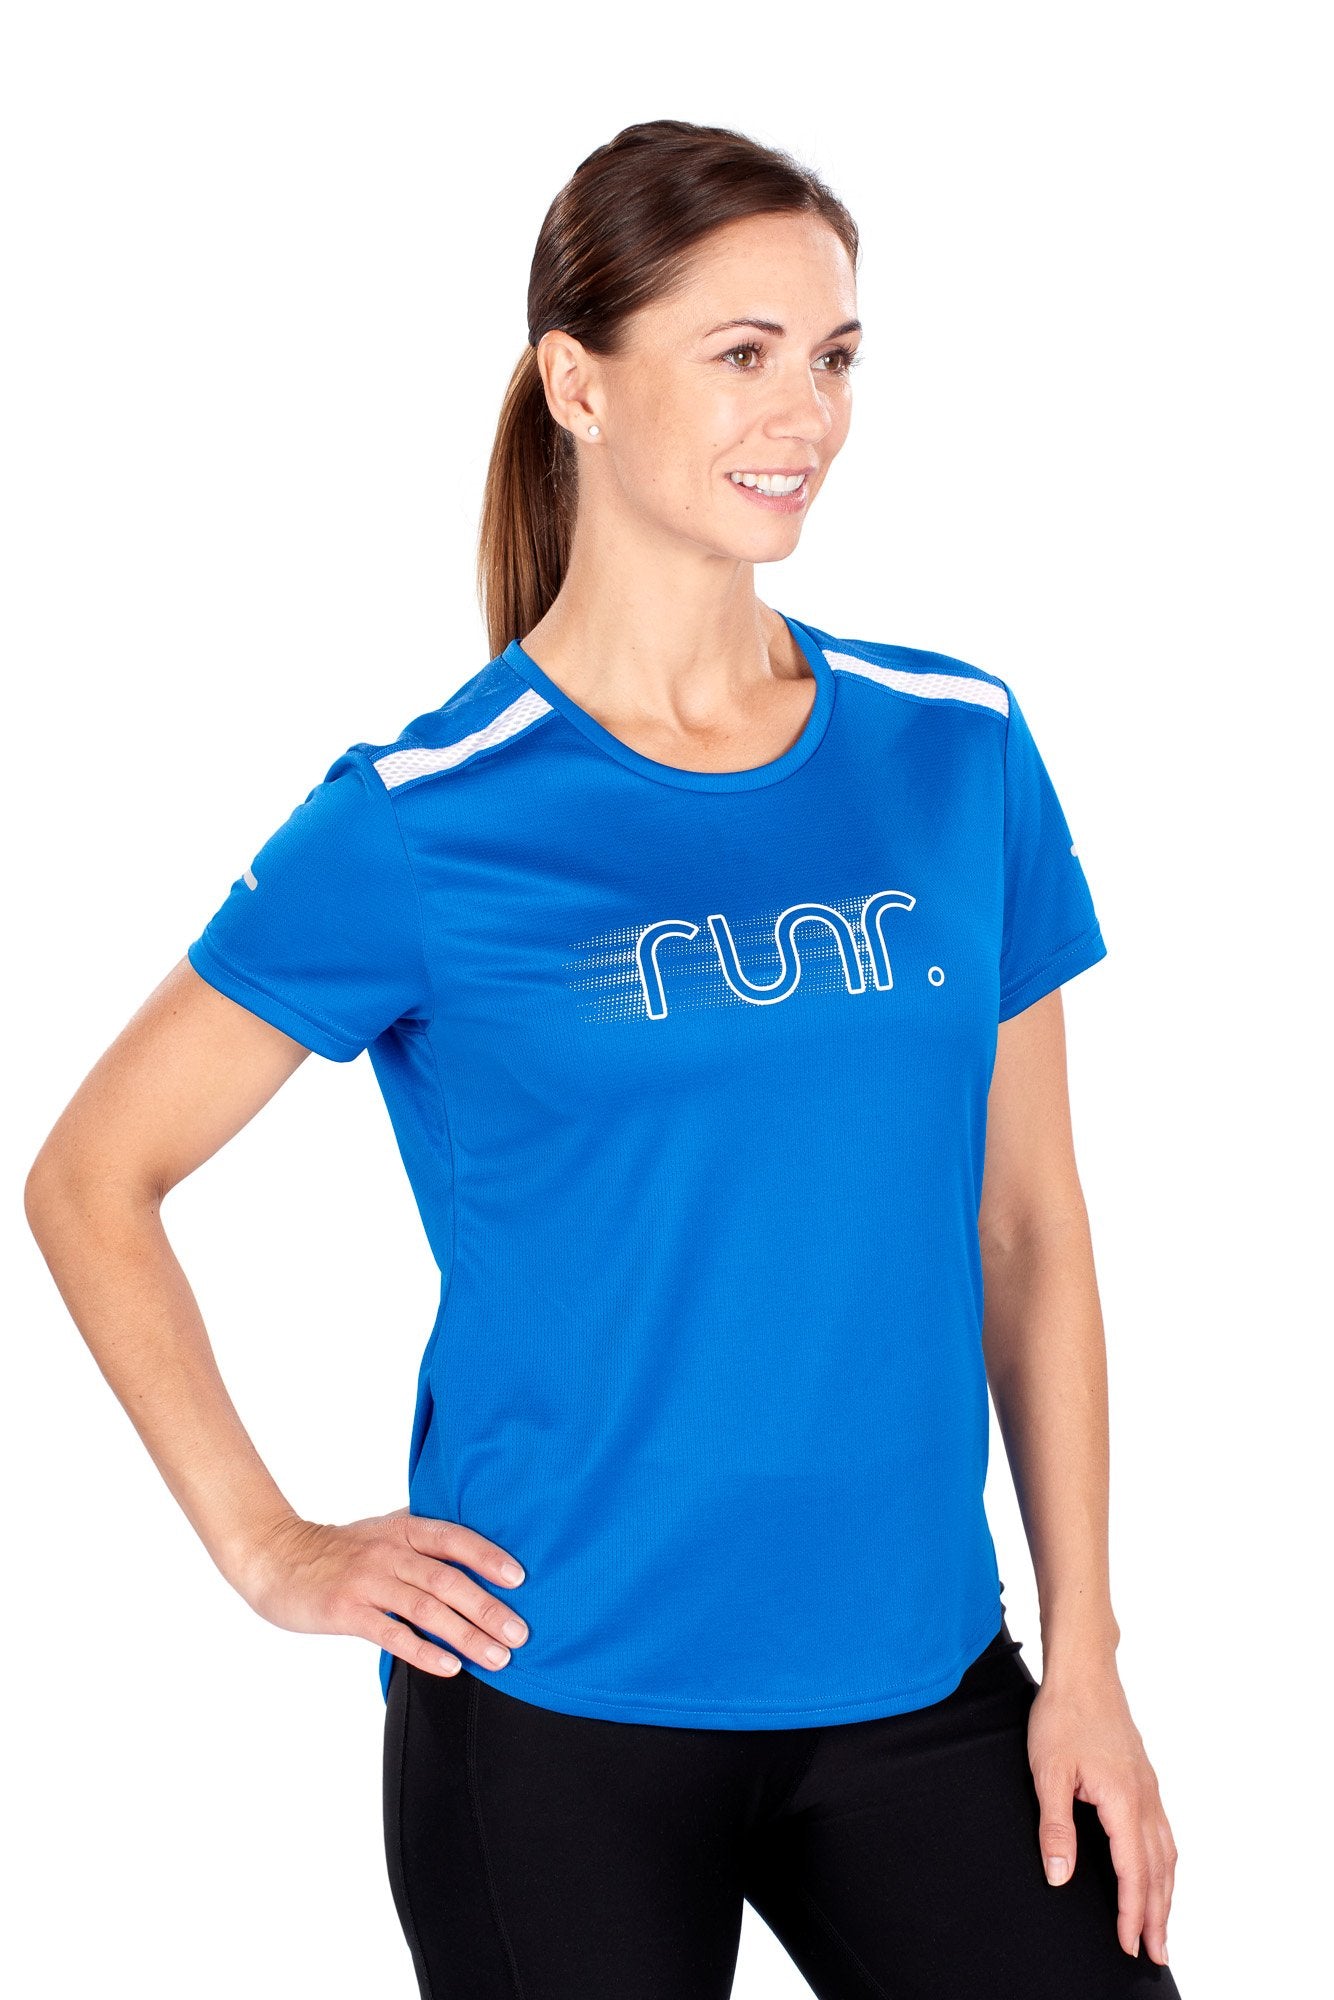 Women's EcoTek Runr Technical T-Shirt - Electric Blue